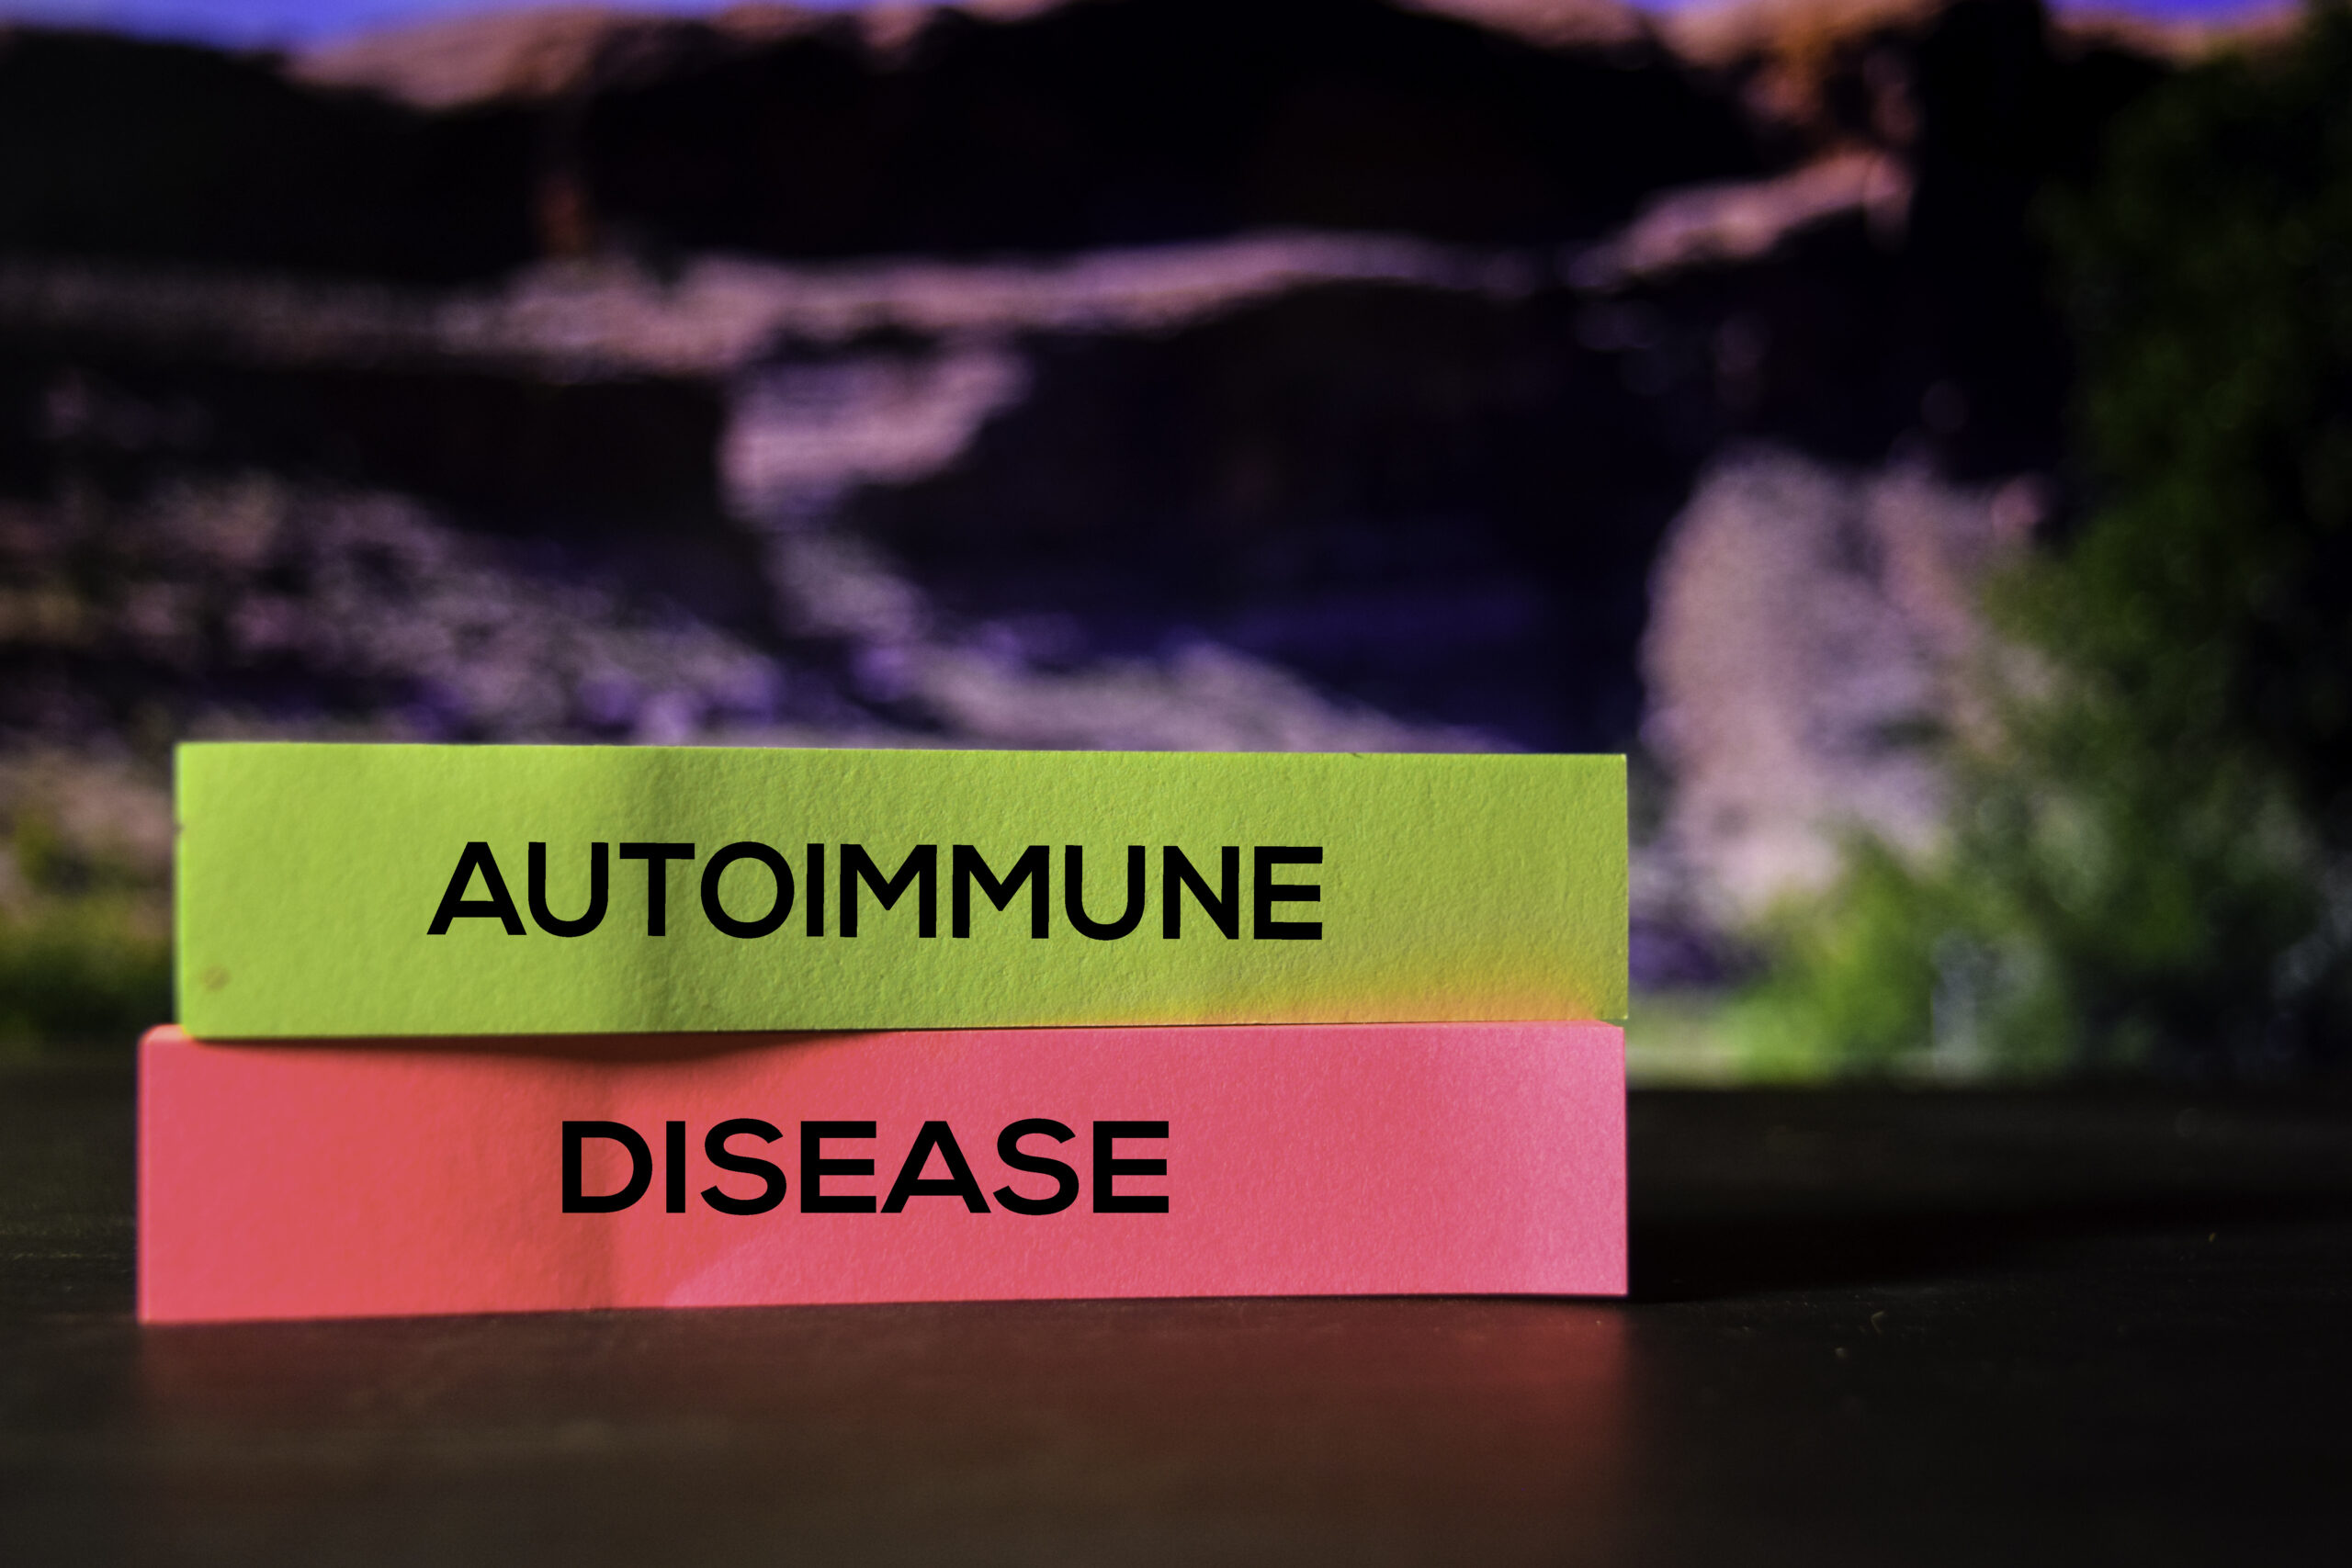 Ten ujmujący obrazek przedstawia napis "choroba autoimmunologiczna" zapisany na kolorowych karteczkach, co symbolicznie odzwierciedla złożoność tych schorzeń. Poprzez różne kolory karteczek, obrazek wskazuje na różnorodność chorób autoimmunologicznych oraz ich wpływ na organizm człowieka.